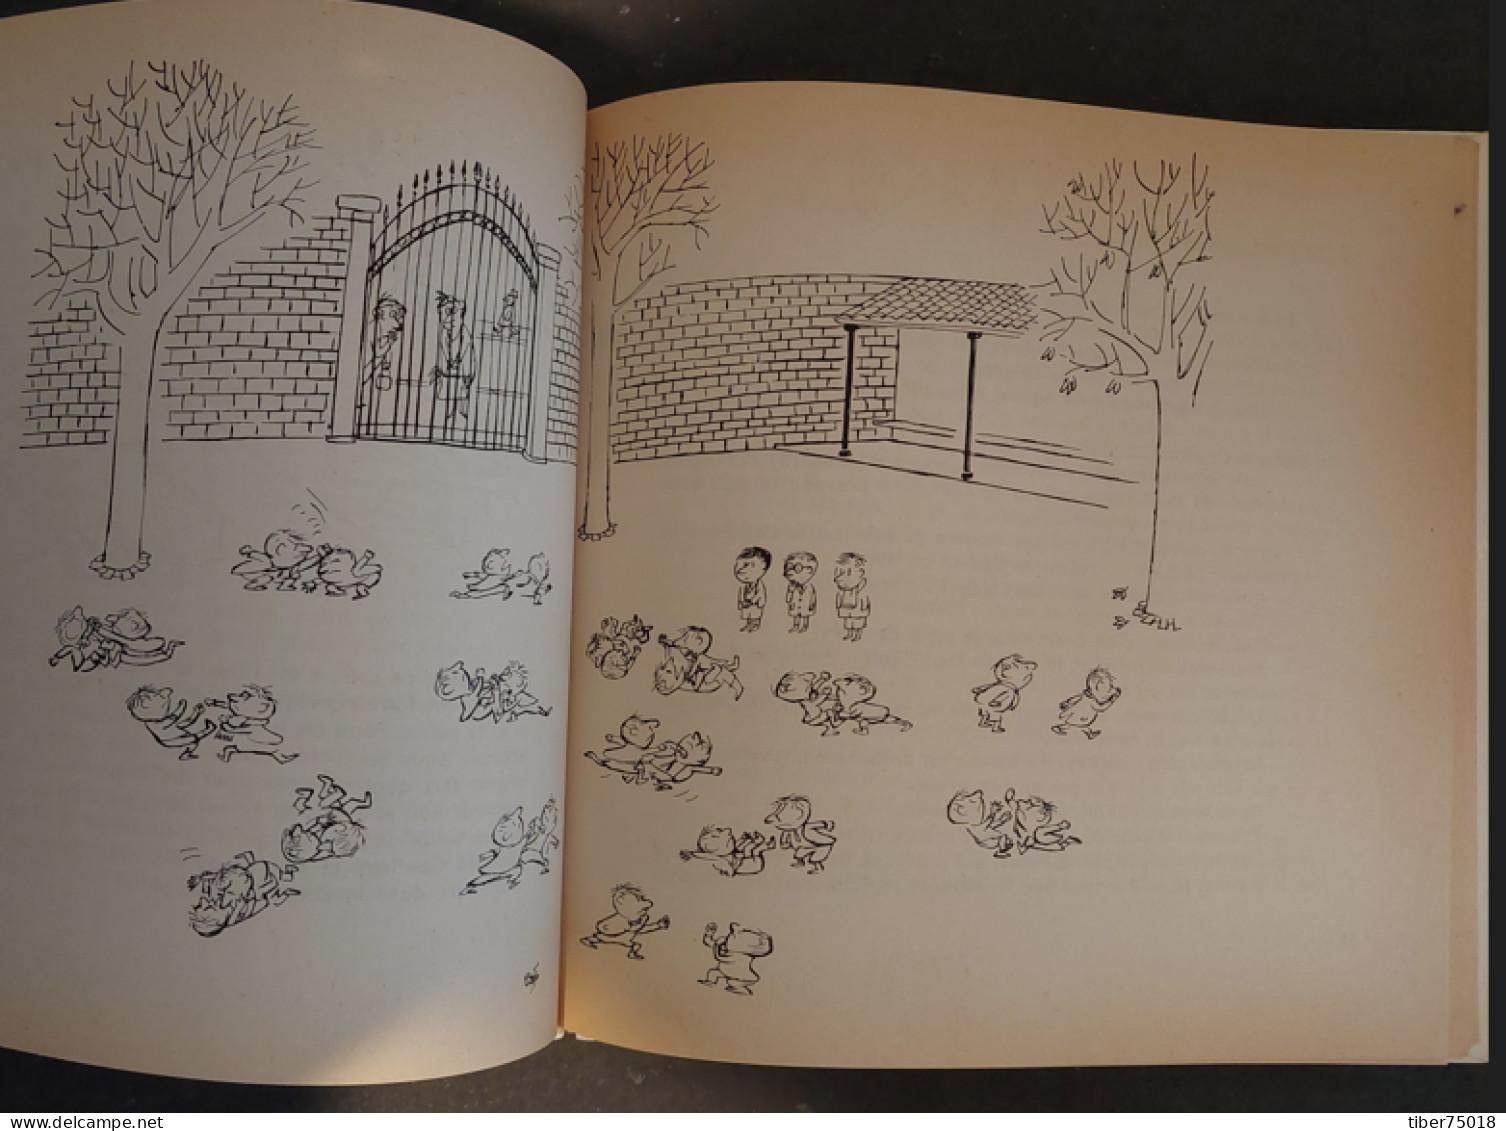 Les Récrés Du Petit Nicolas (18,5 X 18,5) 118 Pages - Goscinny - Illustration : Sempé - édition Denoël 1961 - Sempé